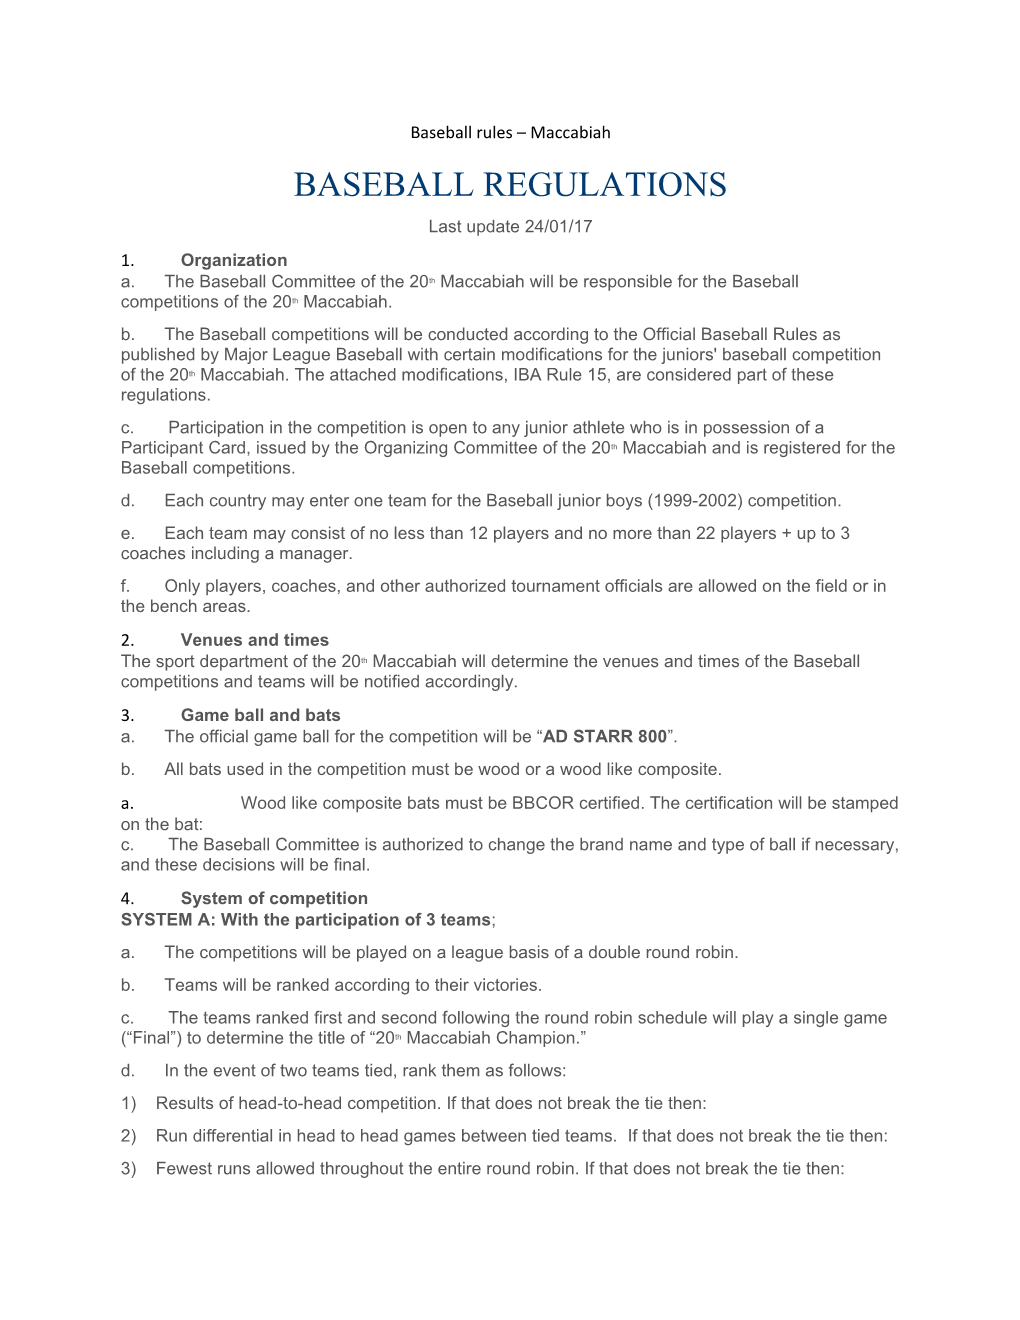 Baseball Rules Maccabiah